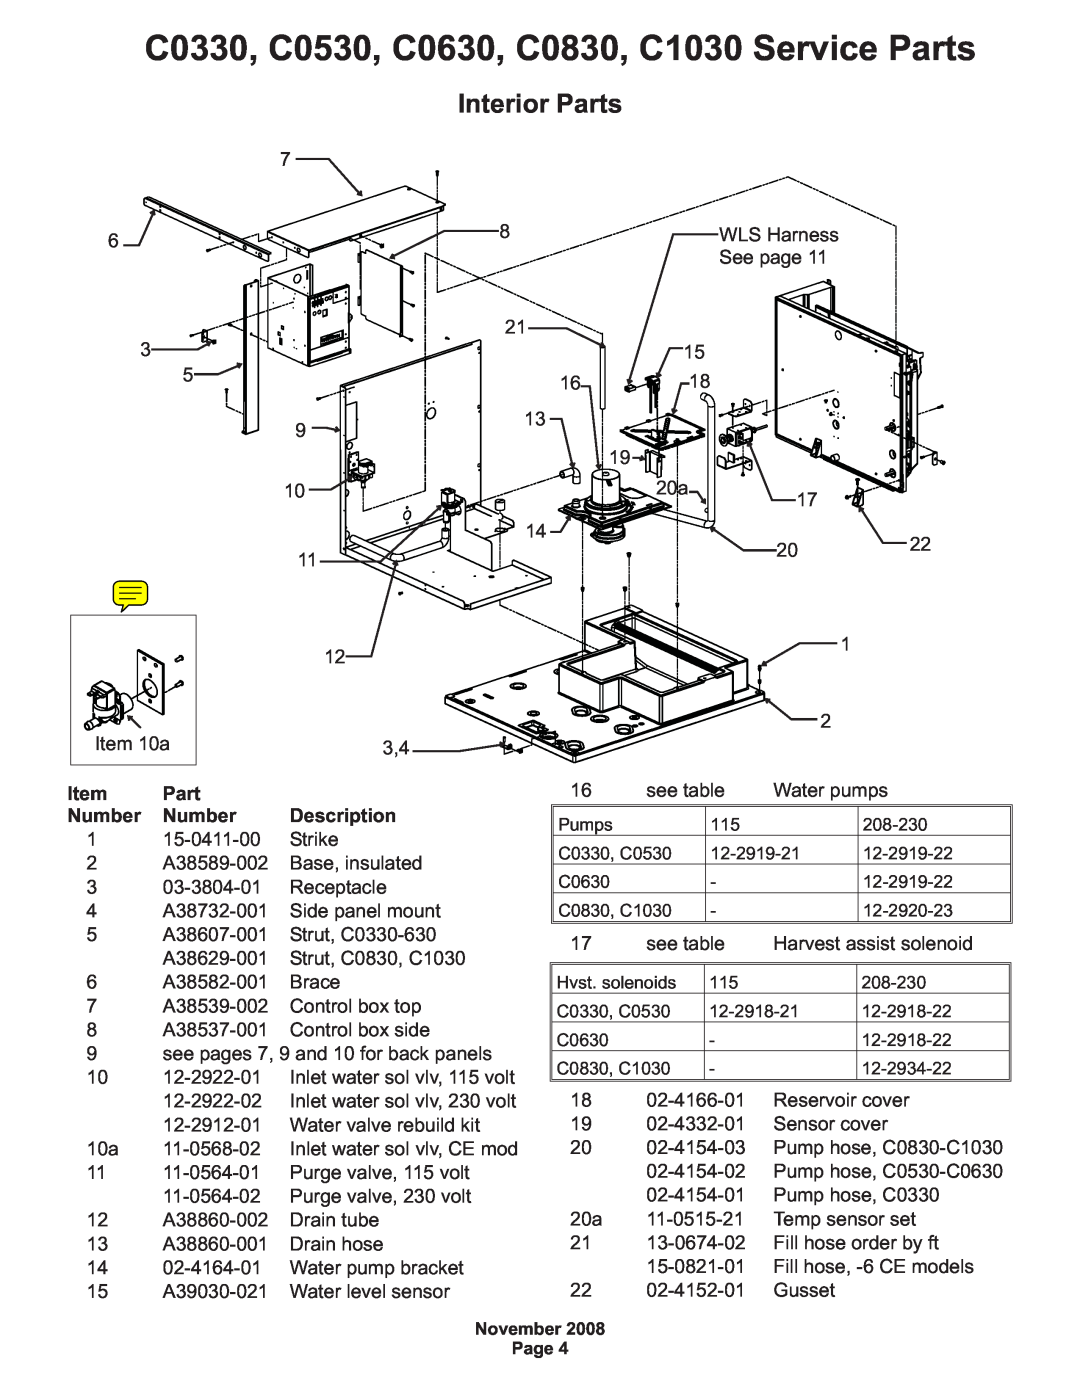 Scotsman Ice manual Interior Parts, 15-0411-00, Strike, C0330, C0530, C0630, C0830, C1030 Service Parts, Number 